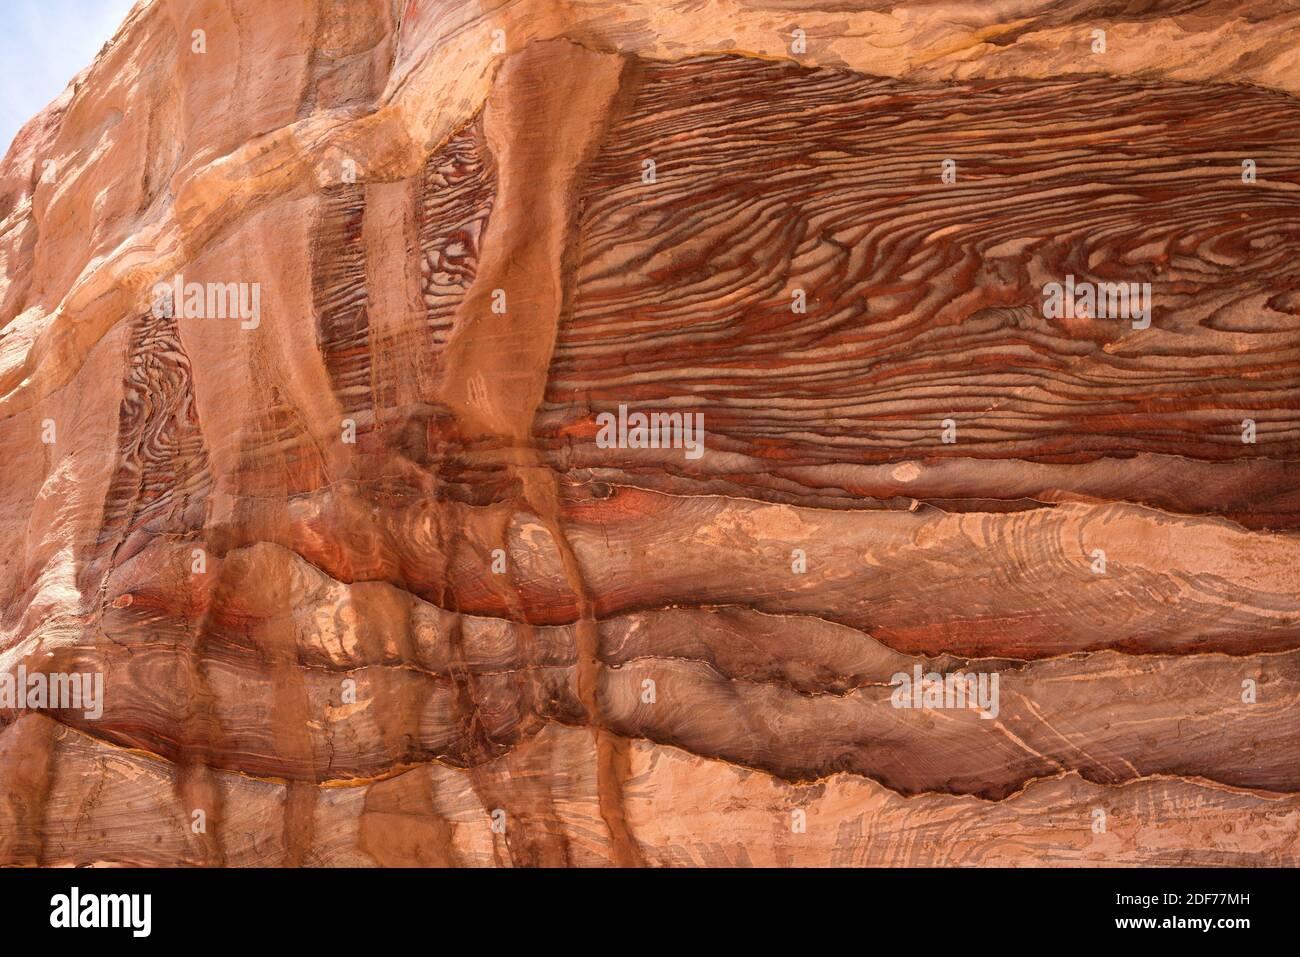 Mehrfarbiger Sandstein mit Kreuzschichtung und Liesegang-Bänderung. Dieses Foto wurde in Petra, Jordanien, aufgenommen. Stockfoto